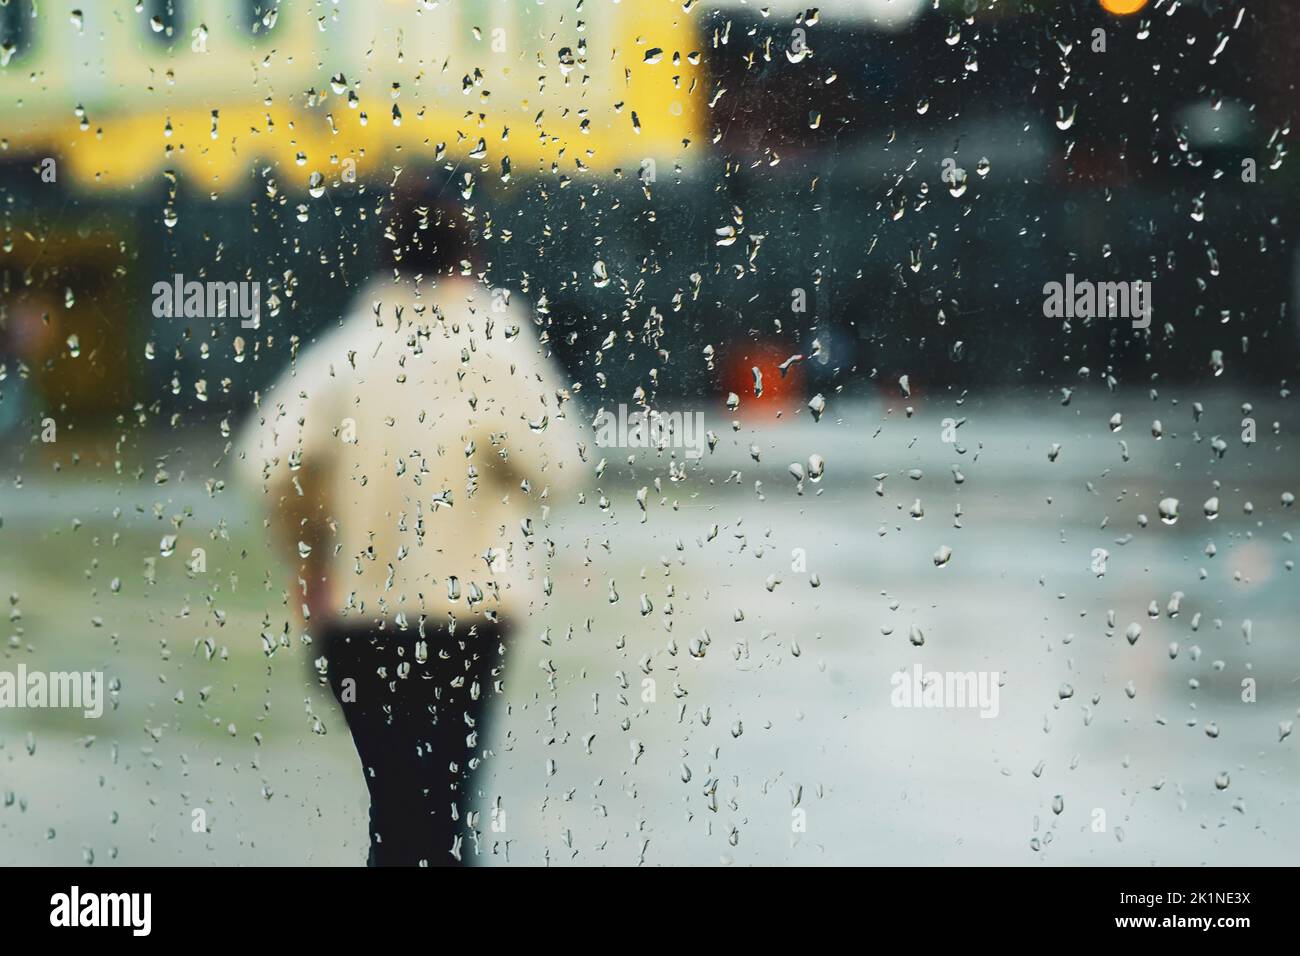 Résumé arrière-plan pluie dans la ville de nuit, silhouette de jeune femme derrière la fenêtre humide à travers les gouttes de pluie sur le verre Banque D'Images